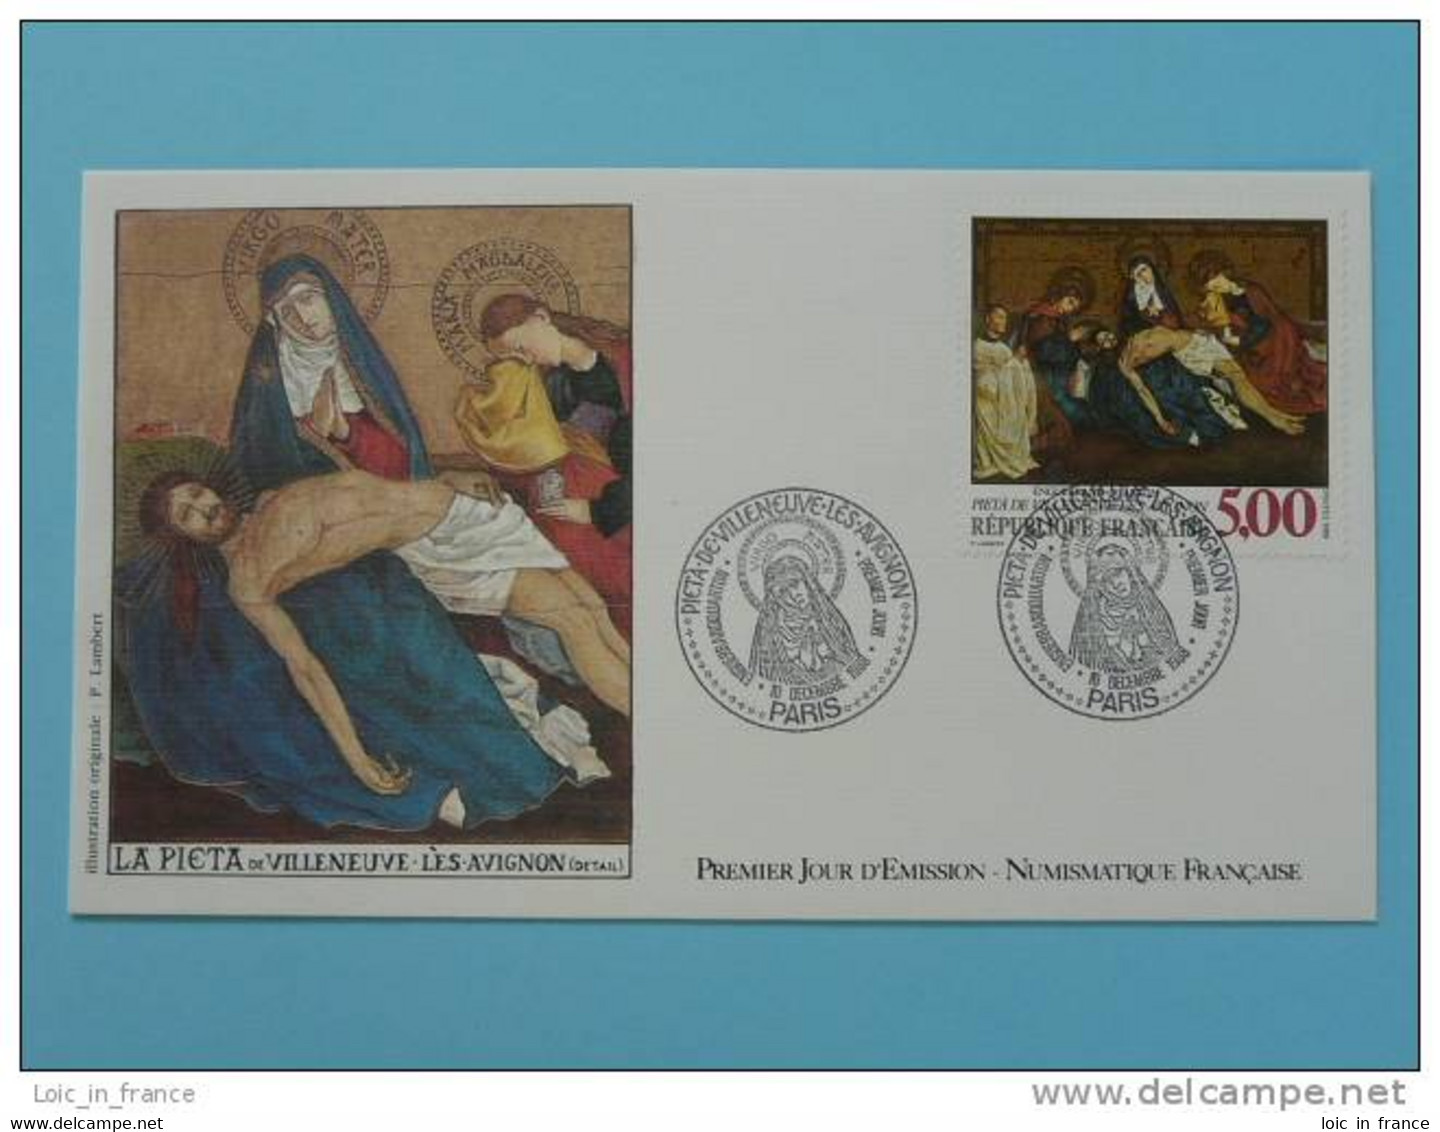 FDC Edition Numismatique Pieta Enguerrand Quarton Ref 142 - Religious